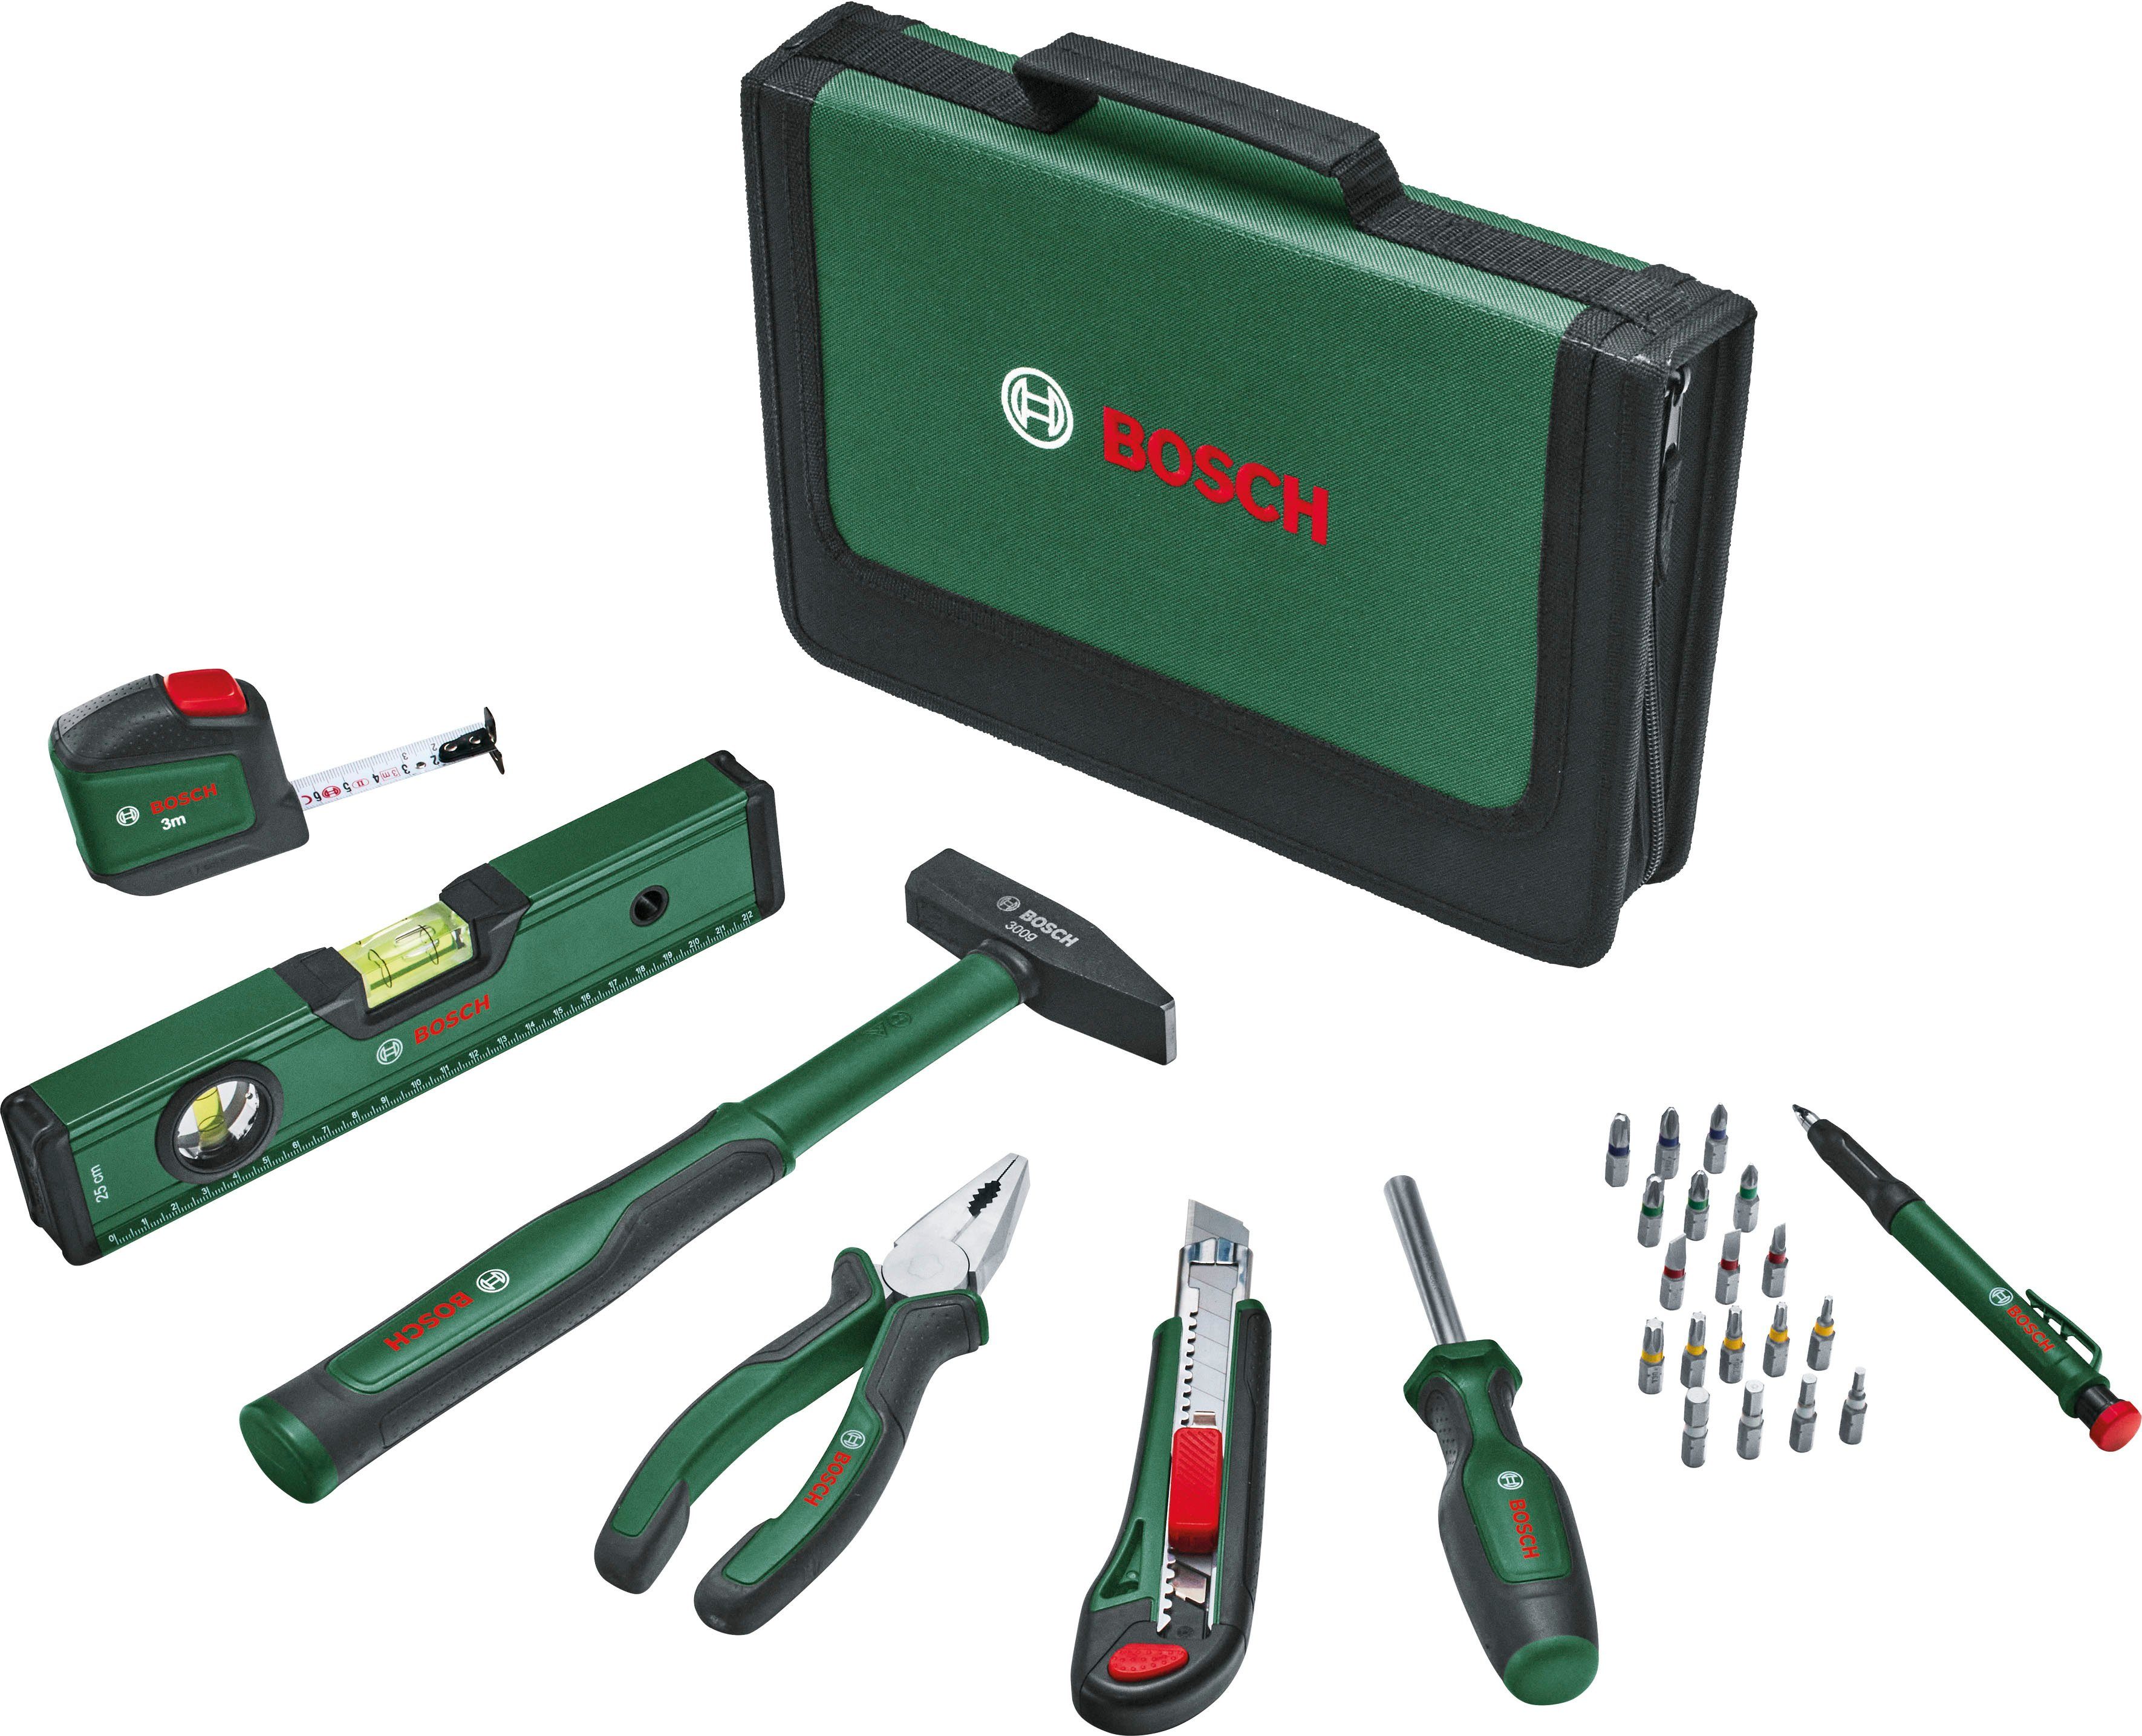 Bosch Home & Garden Werkzeugset Universal Werkzeug Set, 25-teilig